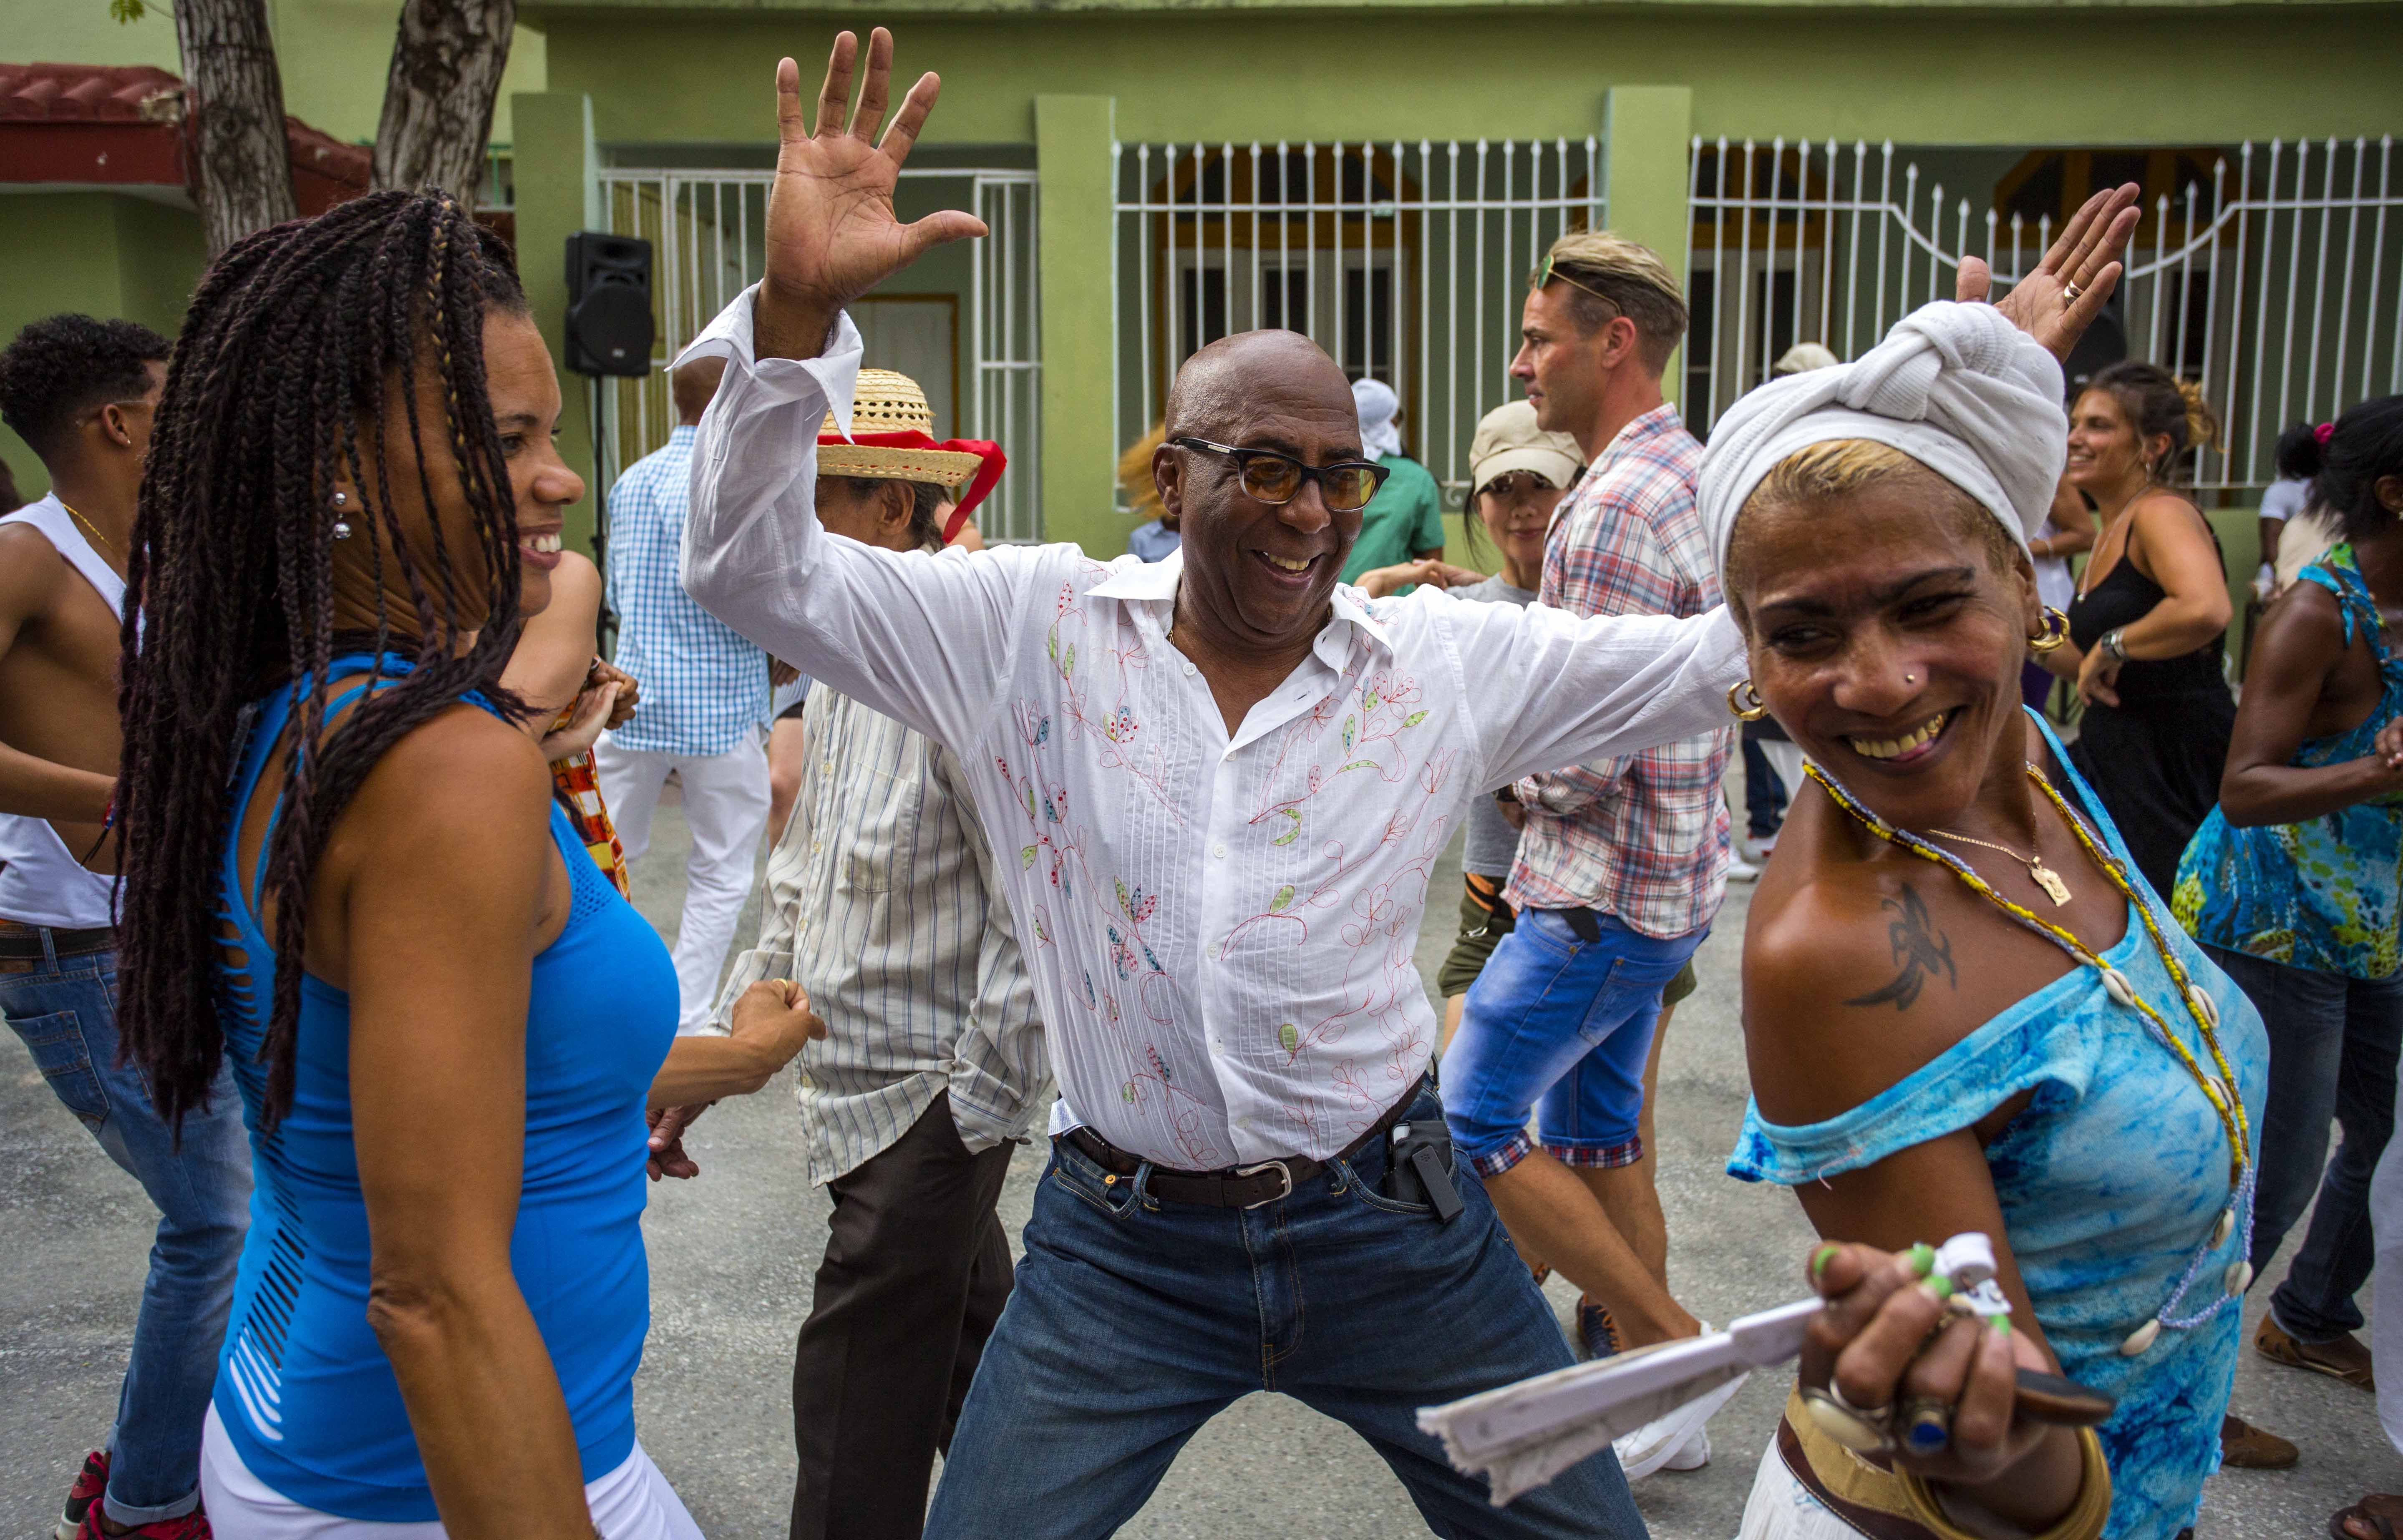 Кубинские мужчины. Куба и кубинцы. Кубинский мужик. Танцы на Кубе. Сальса на Кубе.